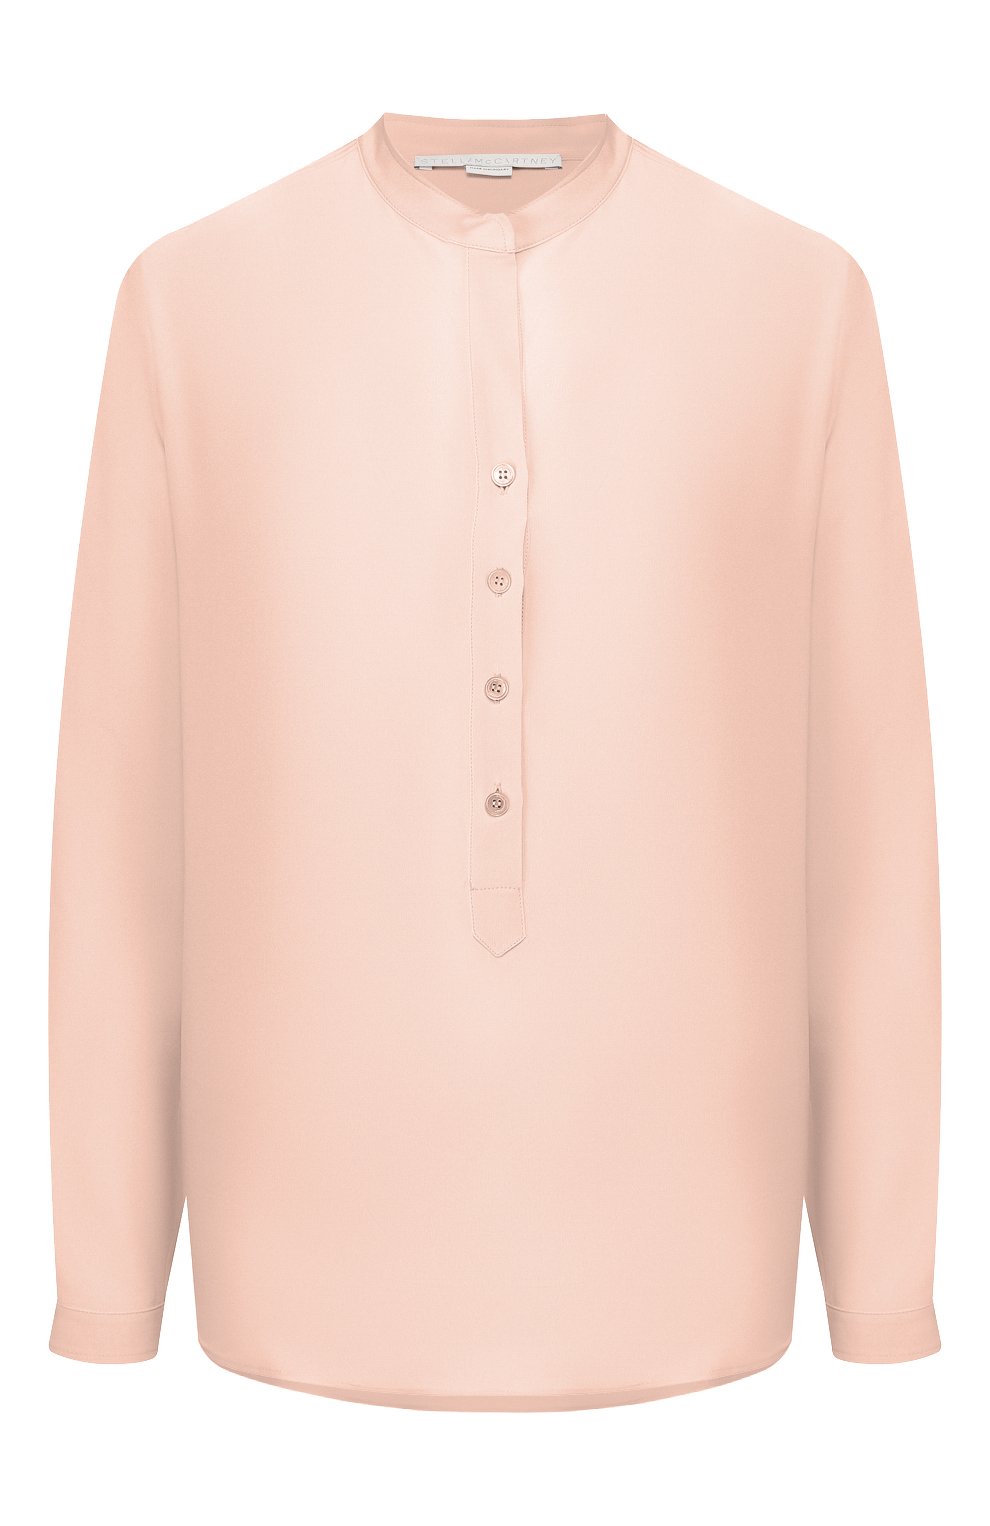 Блузы Stella McCartney, Шелковая блузка Stella McCartney, Болгария, Розовый, Шелк: 100%;, 3968334  - купить